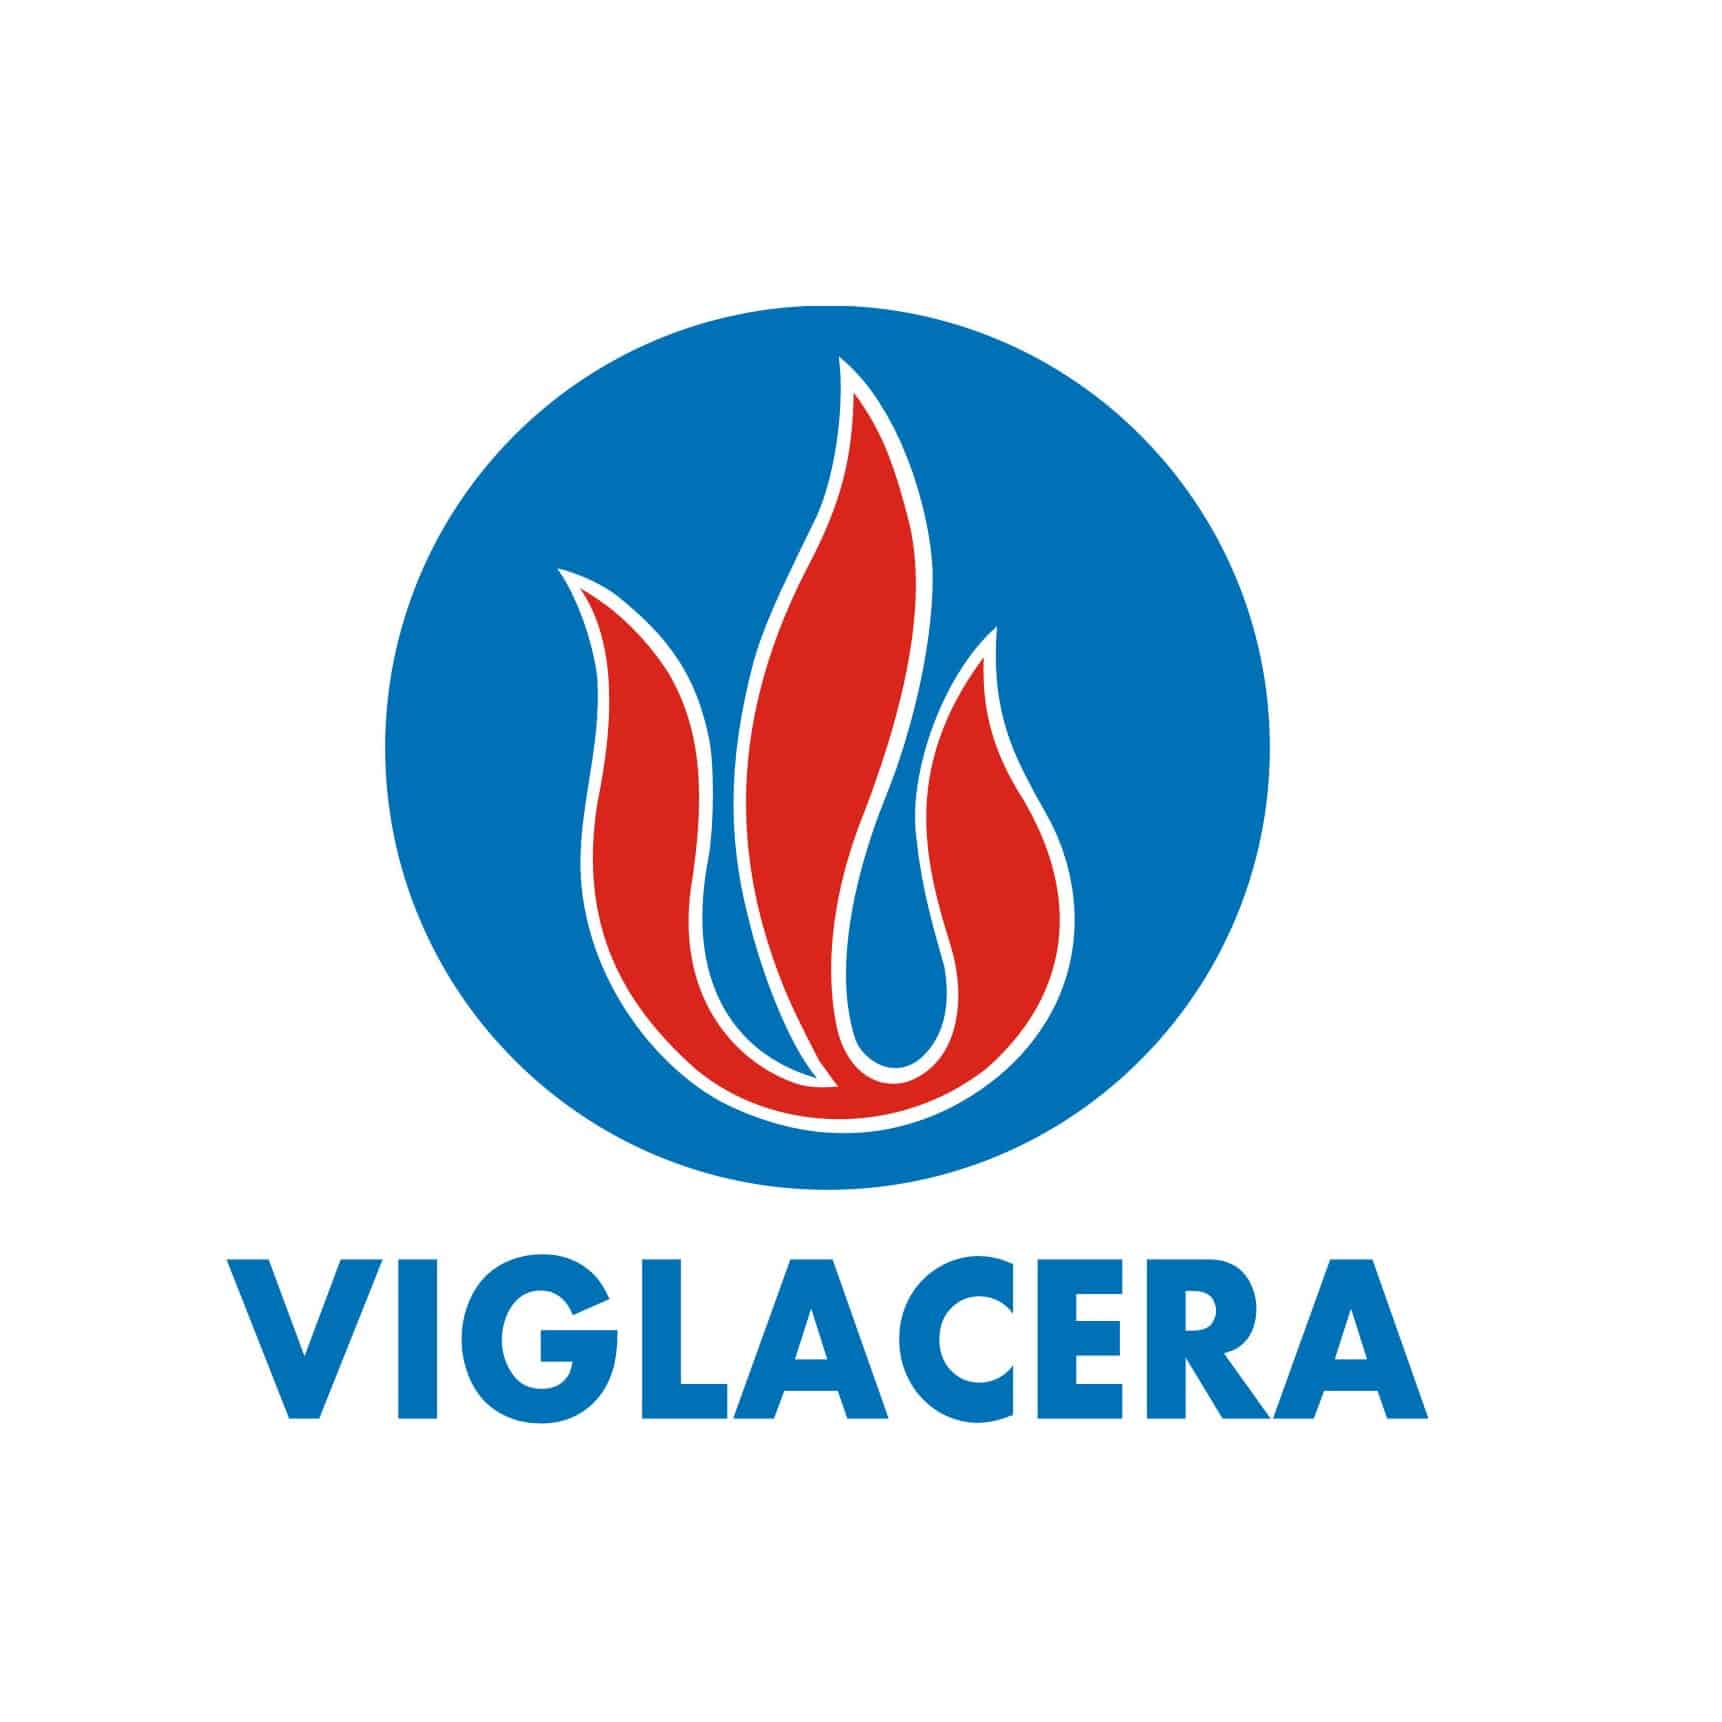 https://cfdways.com/wp-content/uploads/viglacera-en-logo.jpg